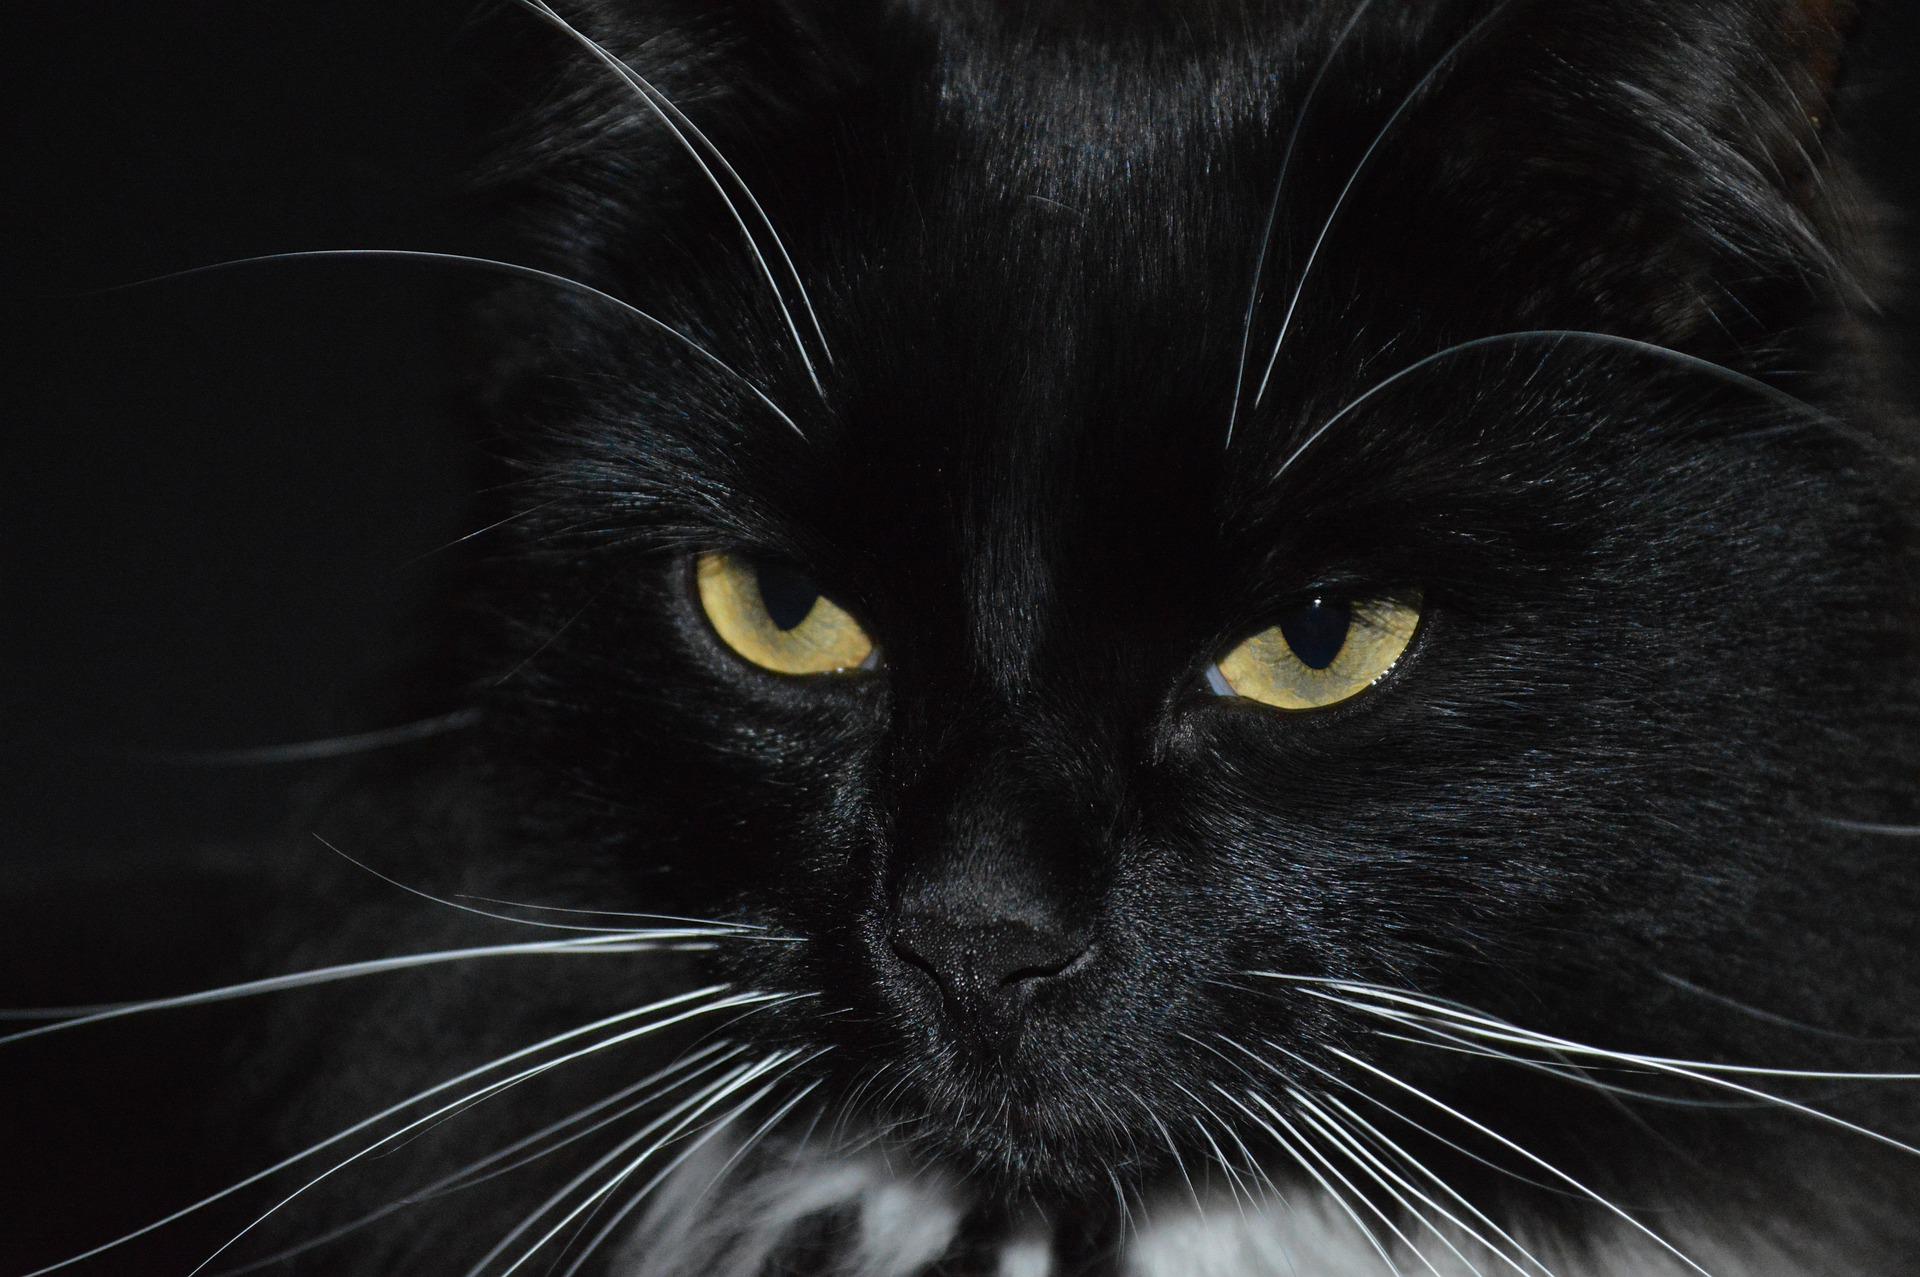 Czarny kot czy przechodzenie pod drabiną – co jeszcze skutkować może nieszczęściem?